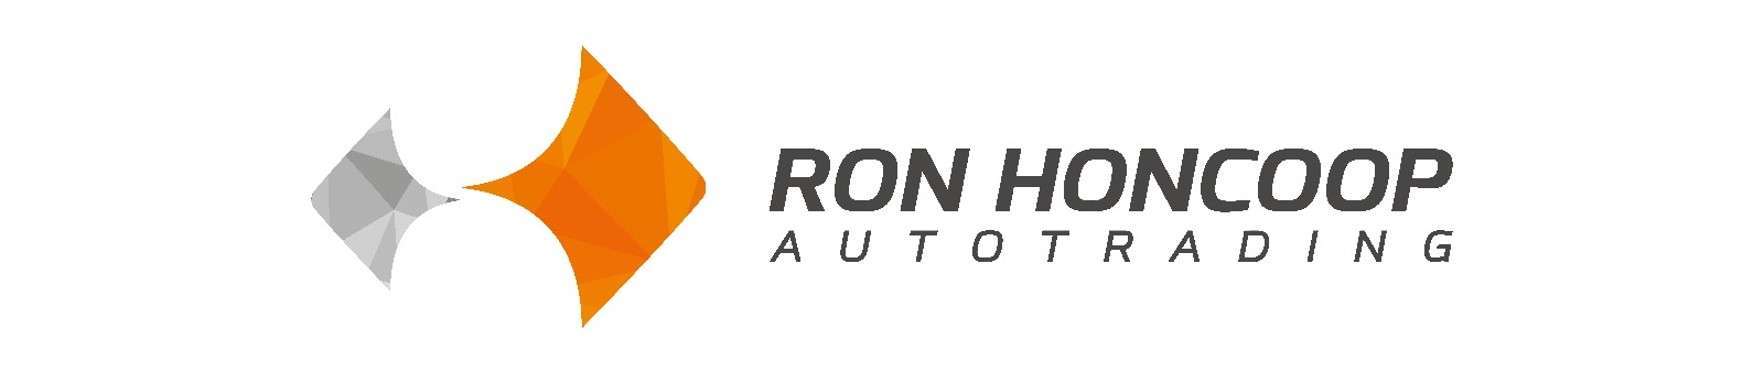 ron-honcoop